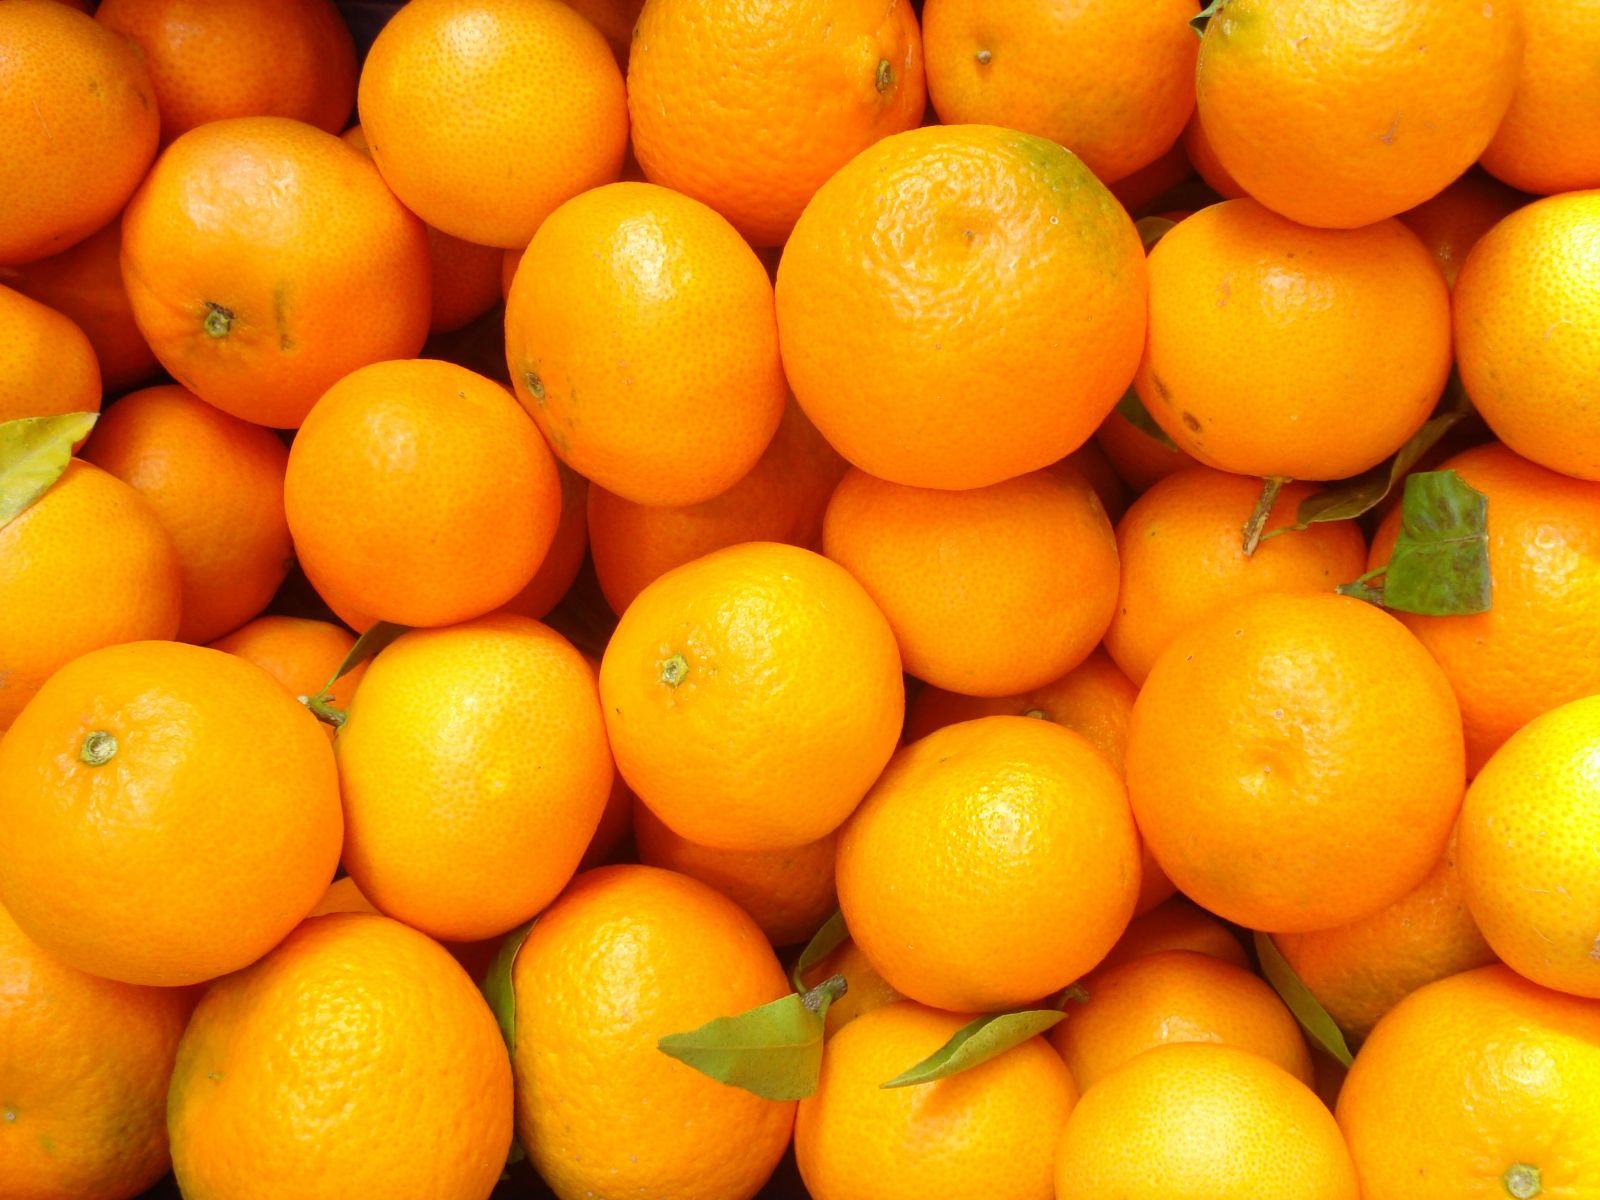 http://otslabvane-dieti.net/wp-content/uploads/2013/08/oranges_pallette.jpg